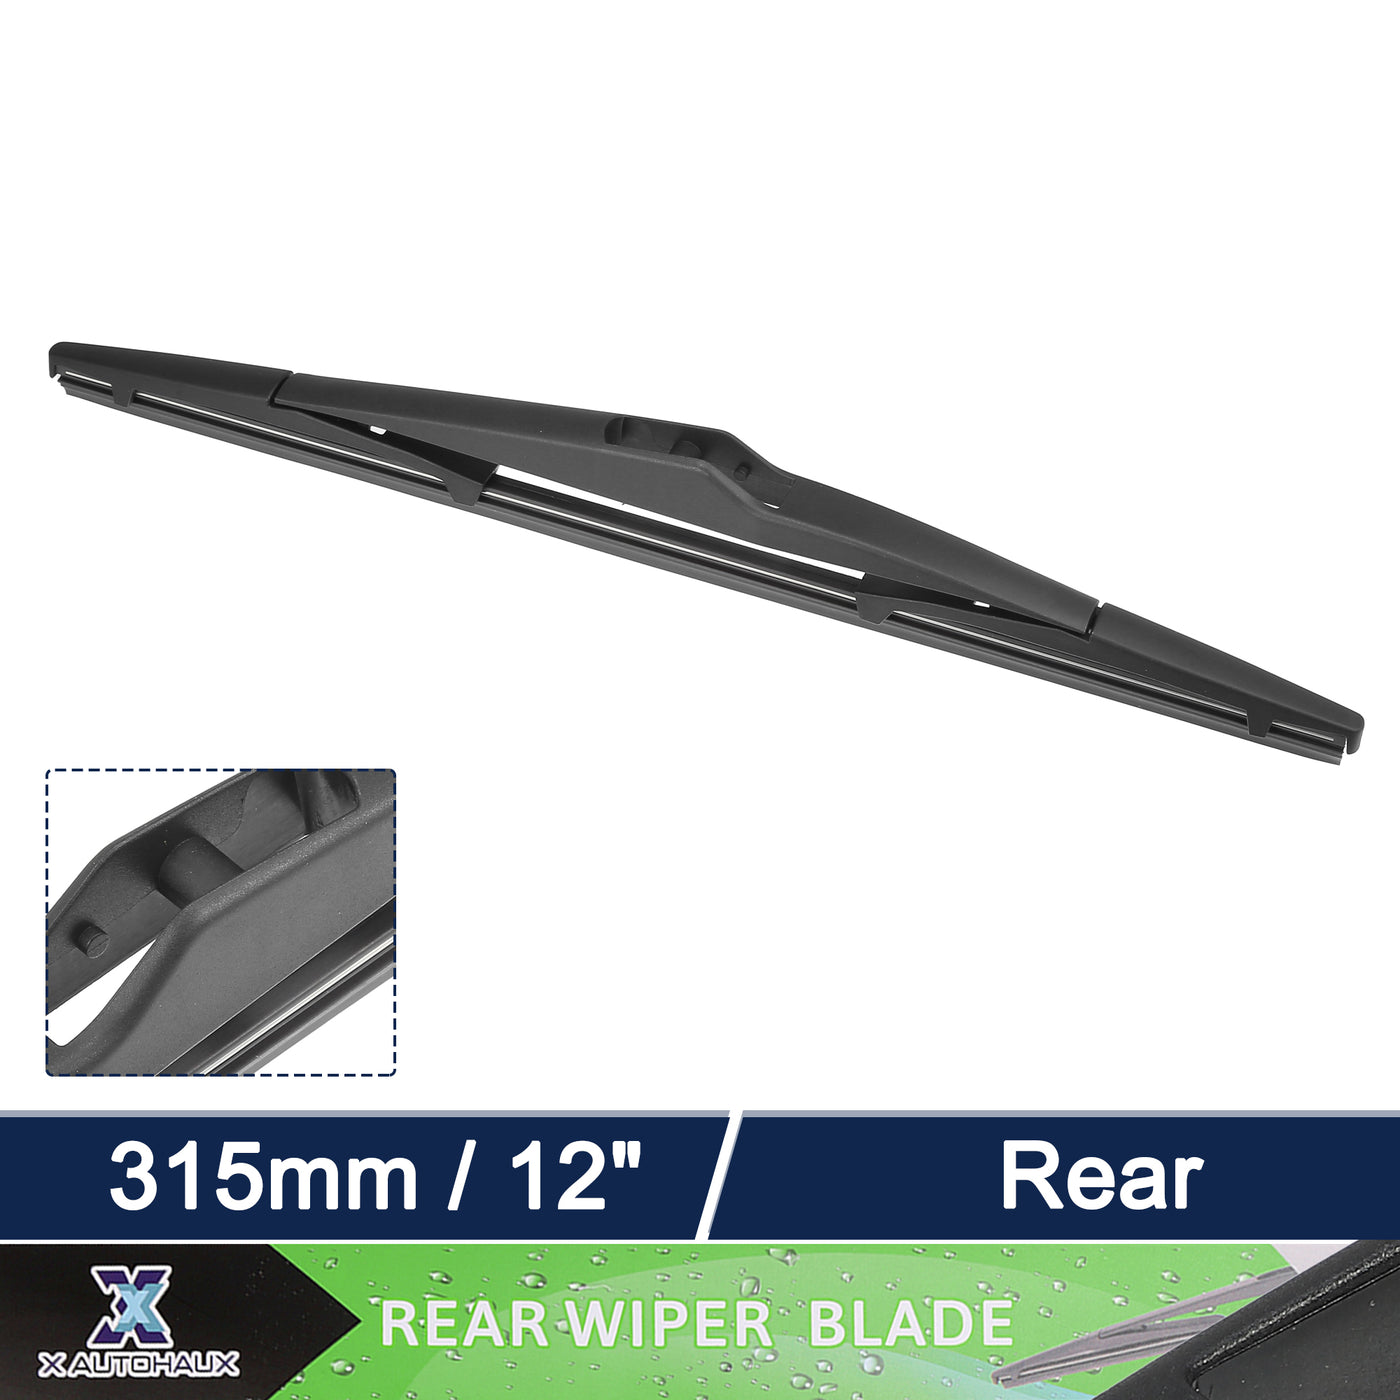 X AUTOHAUX Rear Windshield Wiper Blade Replacement for Kia Sportage 2010-2016 for Hyundai Tucson 2010-2015 for Hyundai Elantra Touring 2007-2010